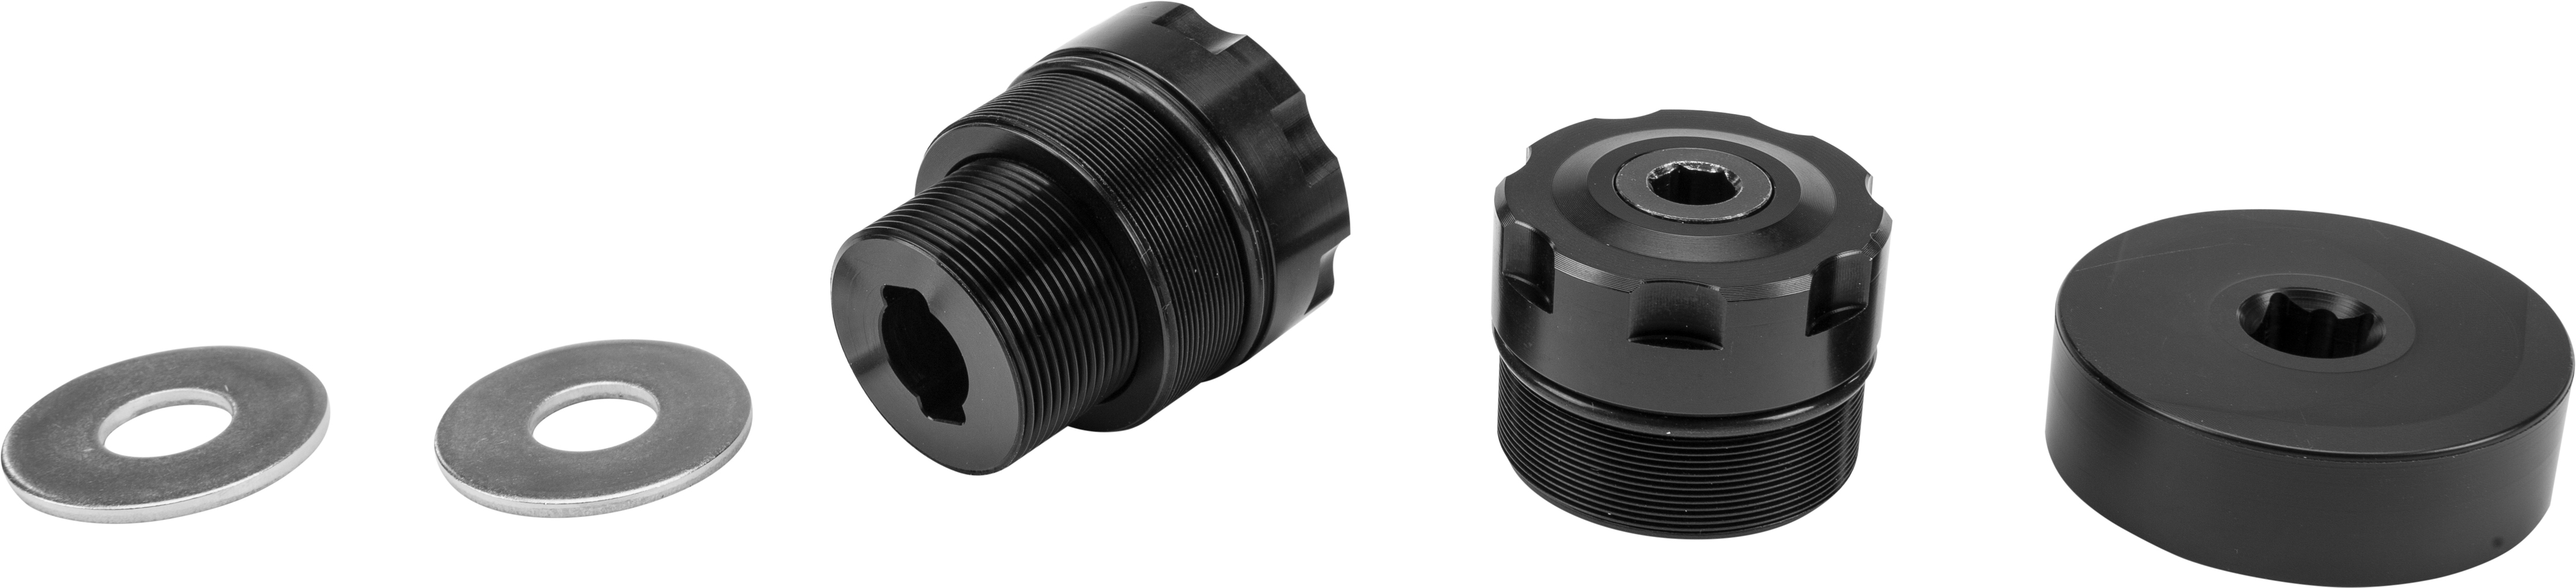 Billet Preload Adjuster Black 49mm - For 06-17 Harley Dyna - Click Image to Close